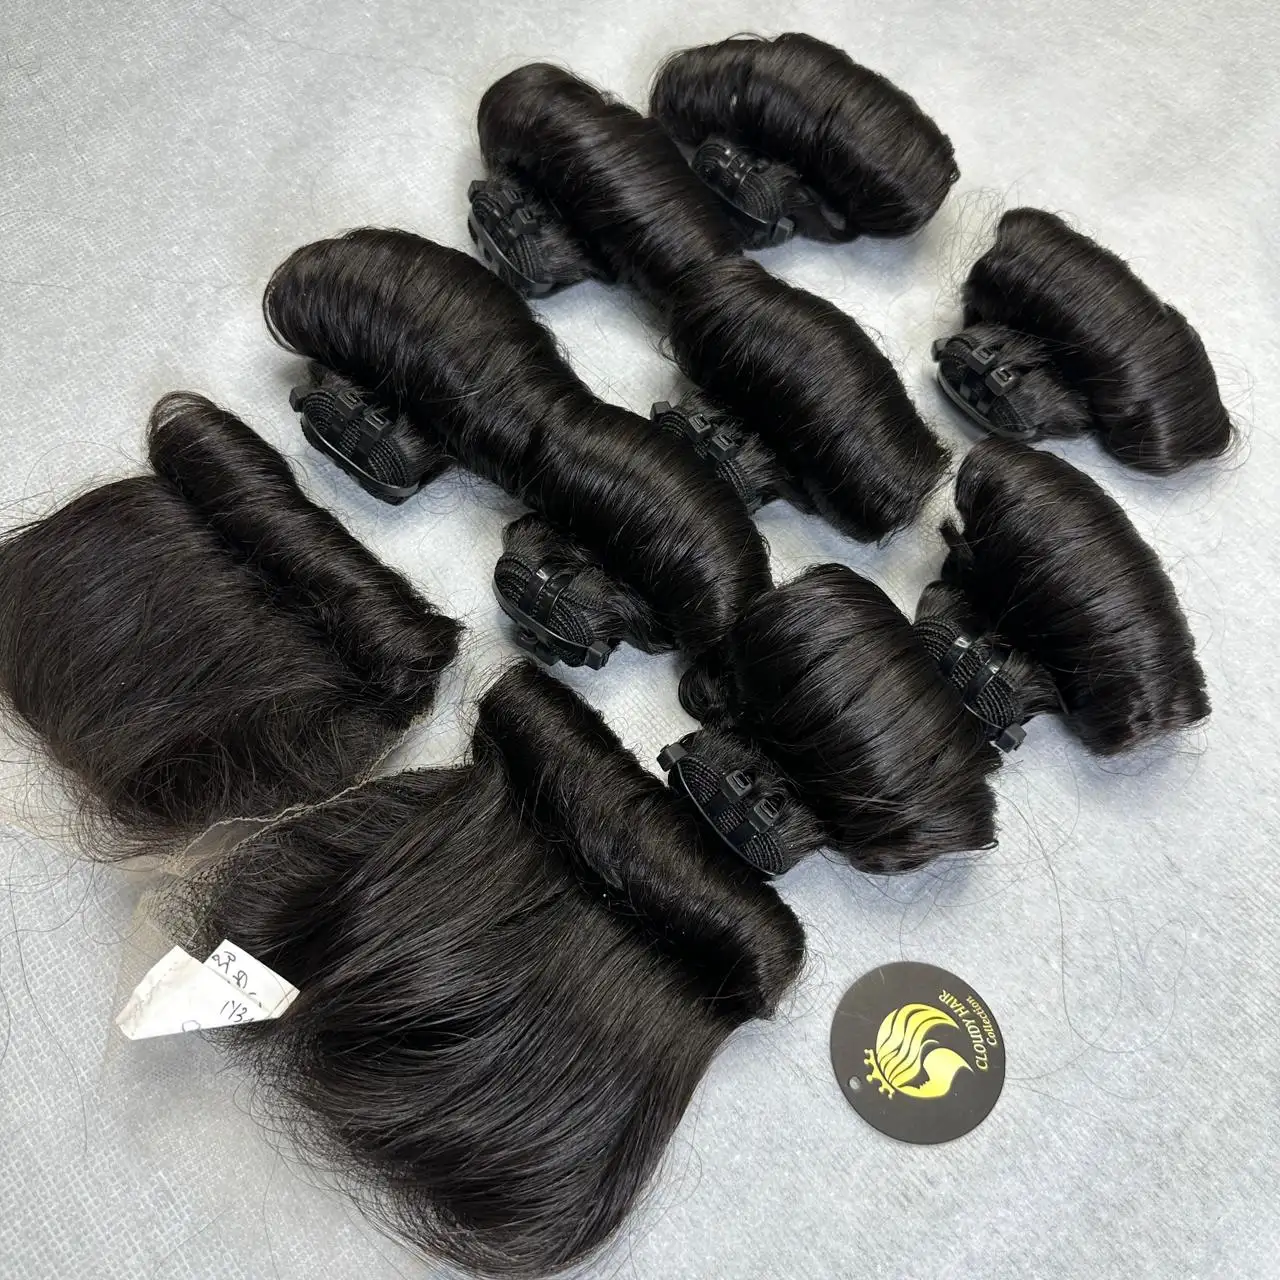 Cabelo encaracolado saltitante 3 pacotes 28 30 Polegada 9A cabelo humano encaracolado virgem cor preta natural tecer cabelo em massa